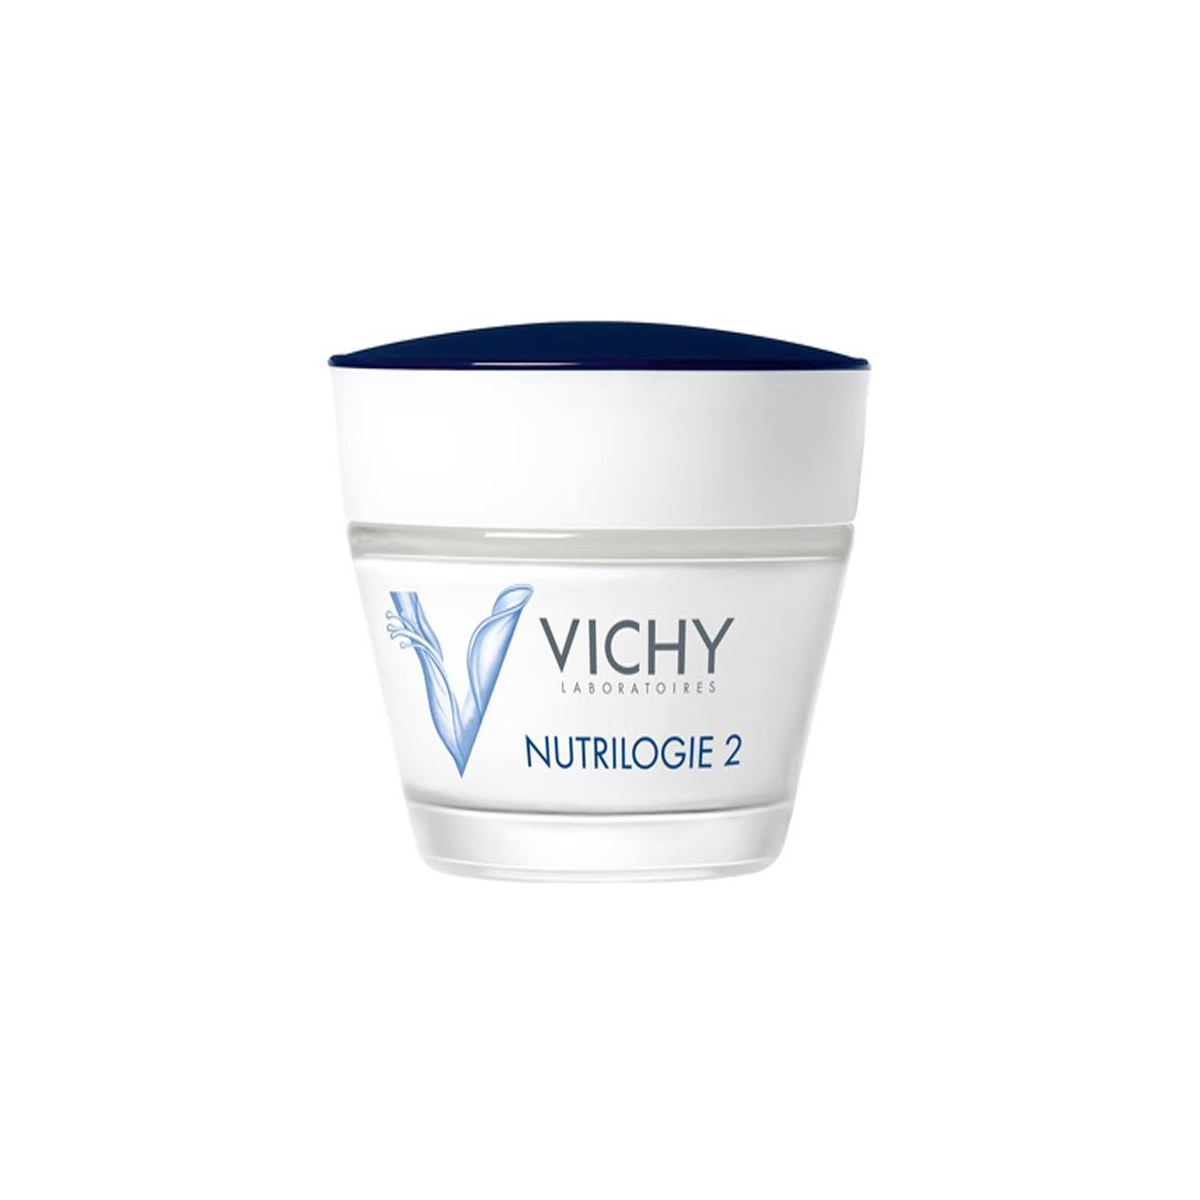 Vichy Nutrilogie 2 Muy Seca 50